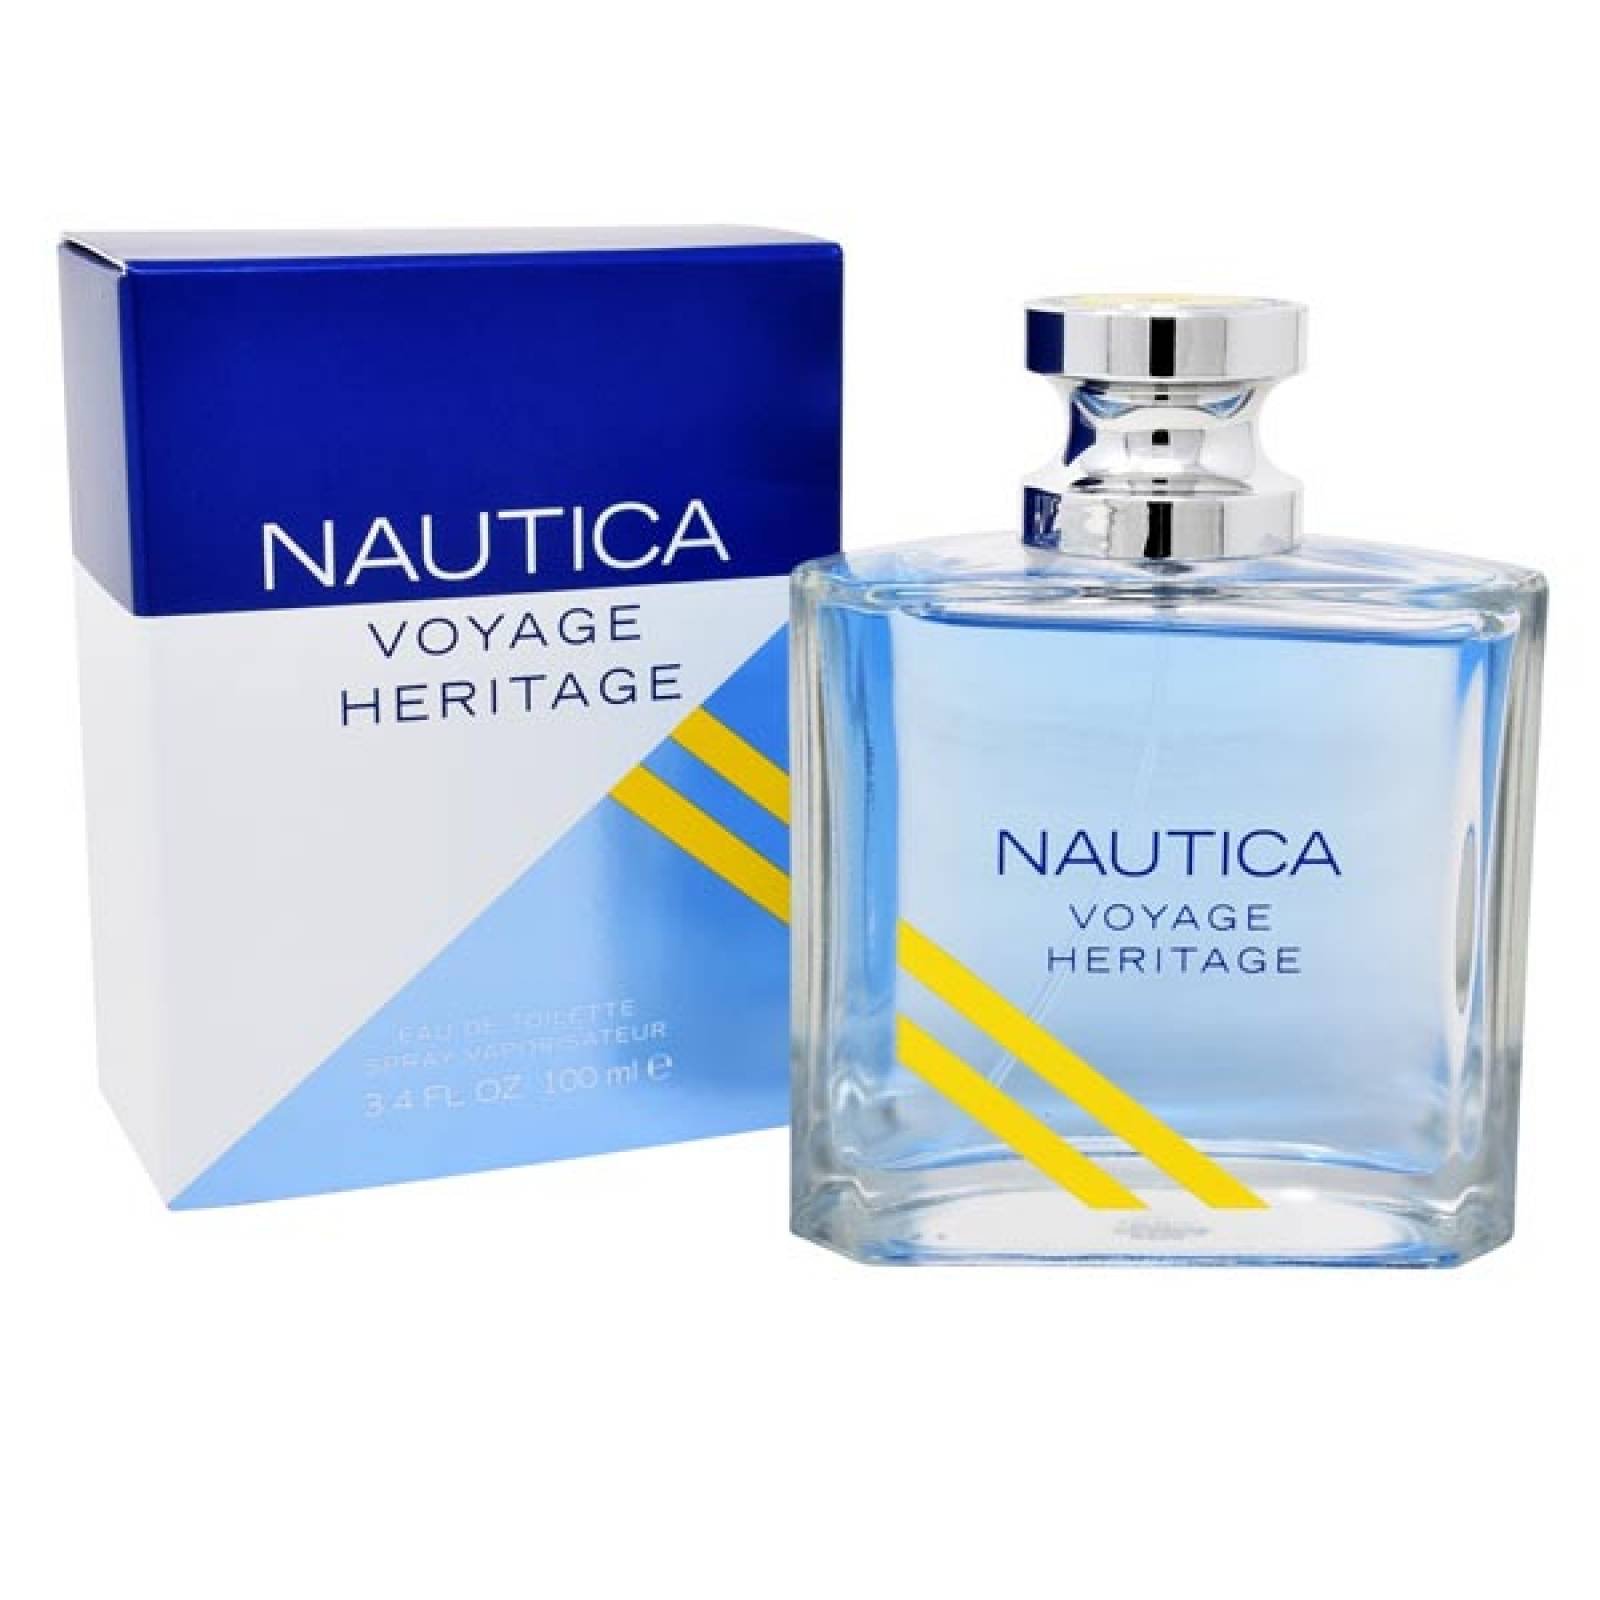 nautica voyage heritage precio